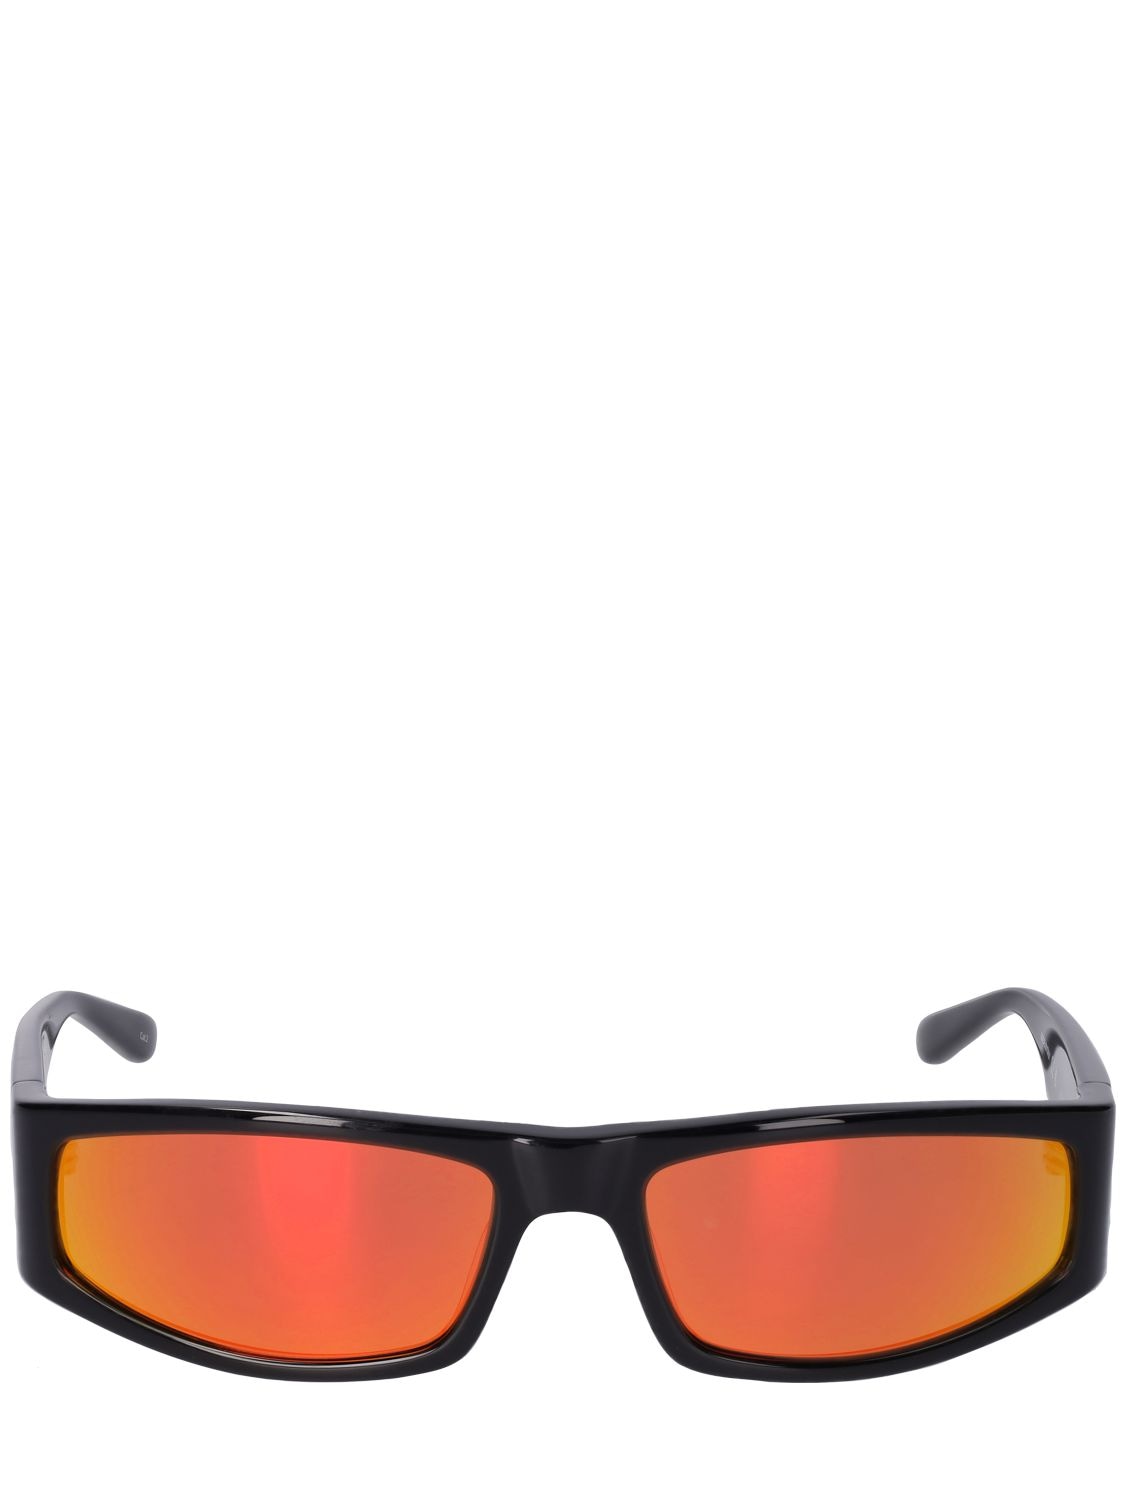 Courrèges Sunset Tech Sunglasses In Black